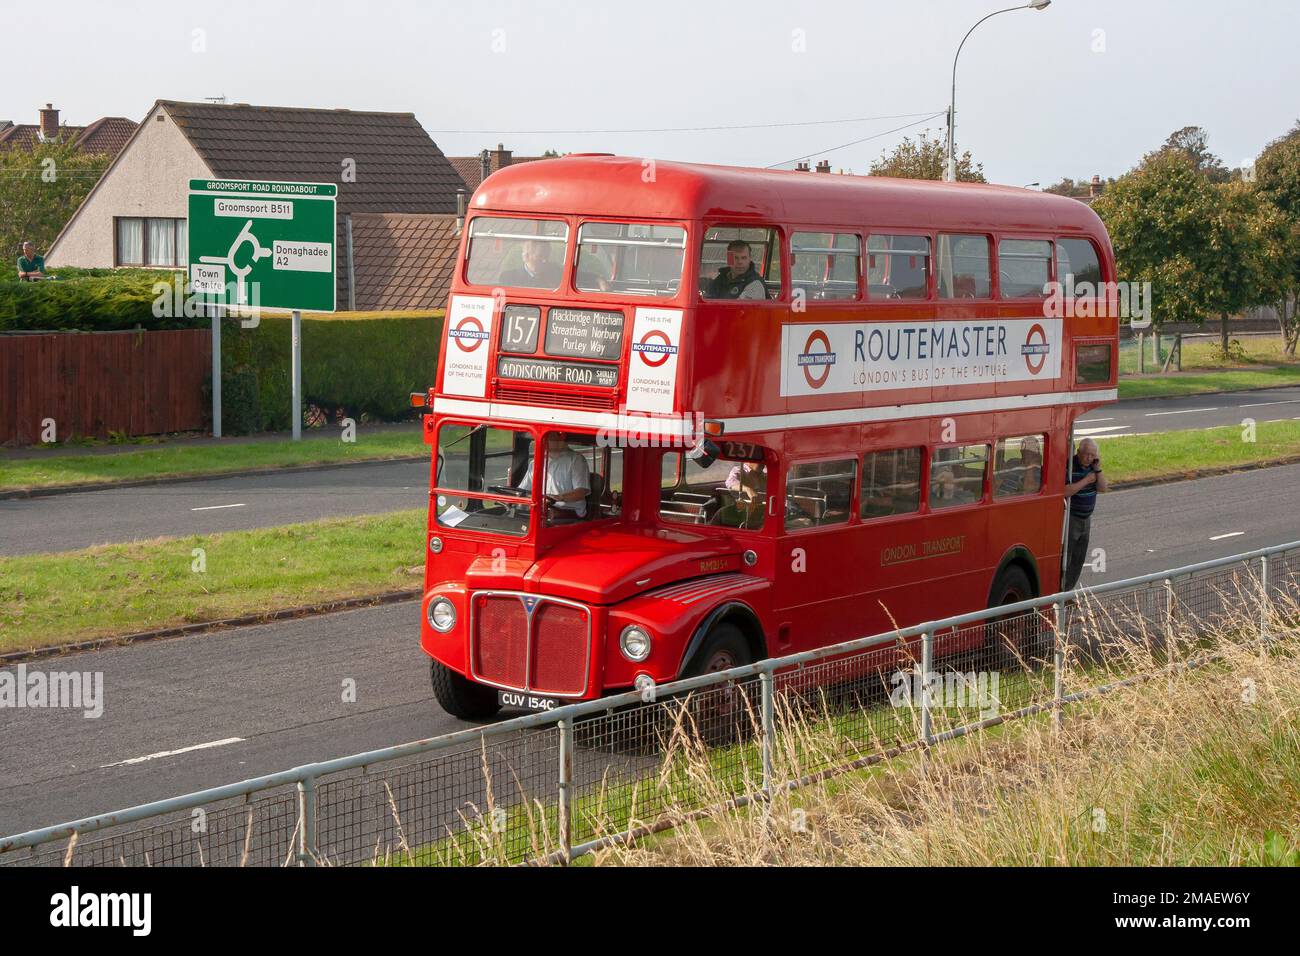 13 sept 2014 Un bus AEG Routemaster London transport à double étage rouge vintage sur la chaussée à Bangor après une journée à une foire locale Banque D'Images